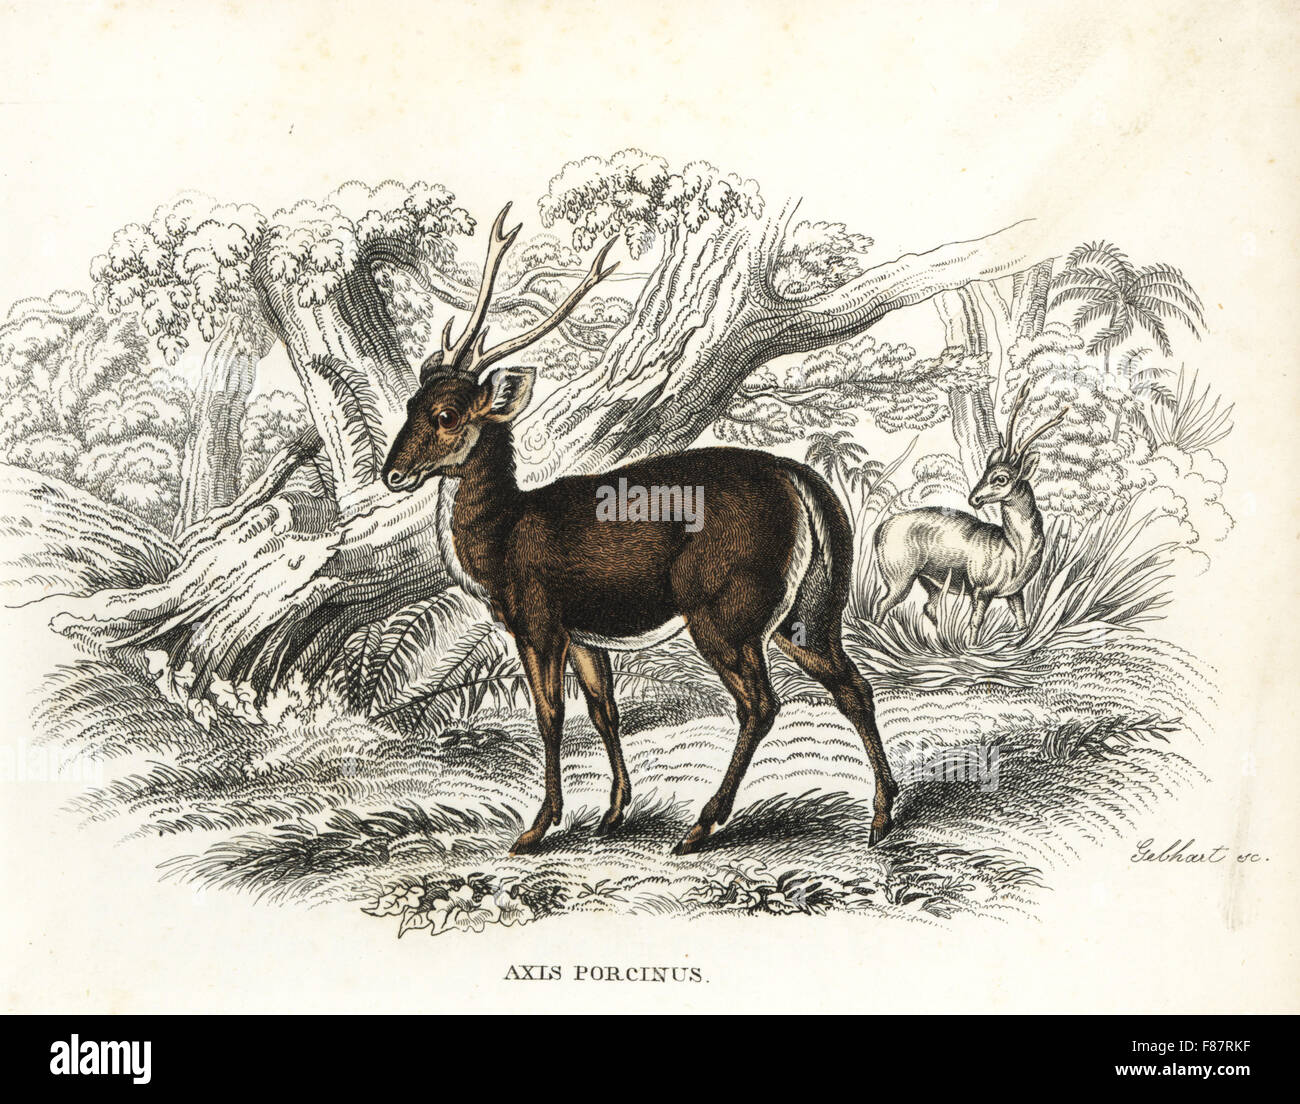 Hog deer, Axis porcinus, endangered. Handcoloured lithograph by Gebhart from Georg Friedrich Treitschke's Gallery of Natural History, Naturhistorischer Bildersaal des Thierreiches, Liepzig, 1842. Stock Photo